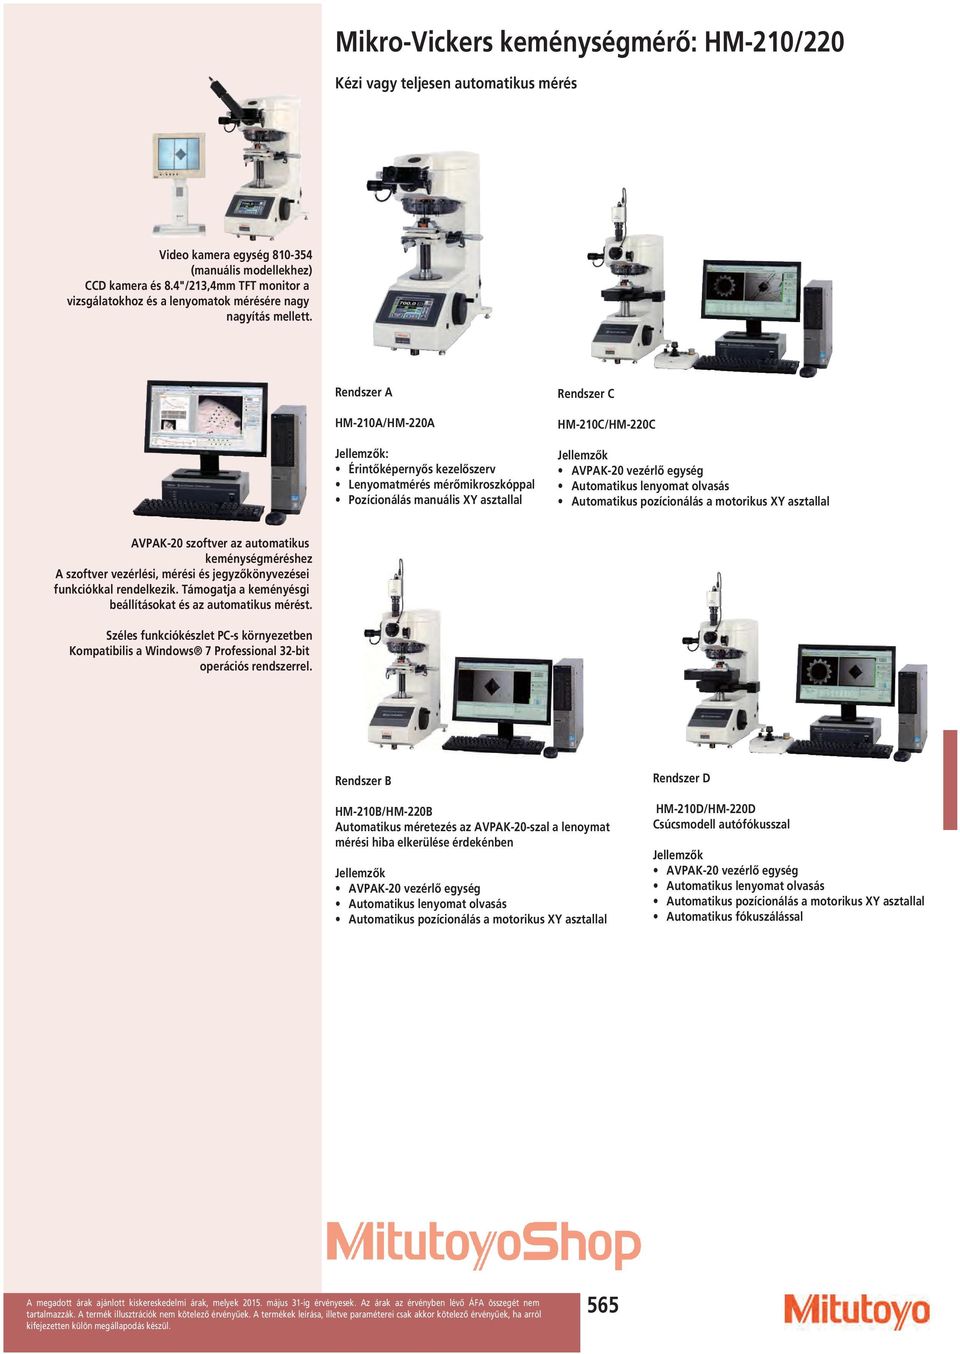 Rendszer A HM-210A/HM-220A Jellemzők: Érintőképernyős kezelőszerv Lenyomatmérés mérőmikroszkóppal Pozícionálás manuális XY asztallal Rendszer C HM-210C/HM-220C Jellemzők AVPAK-20 vezérlő egység